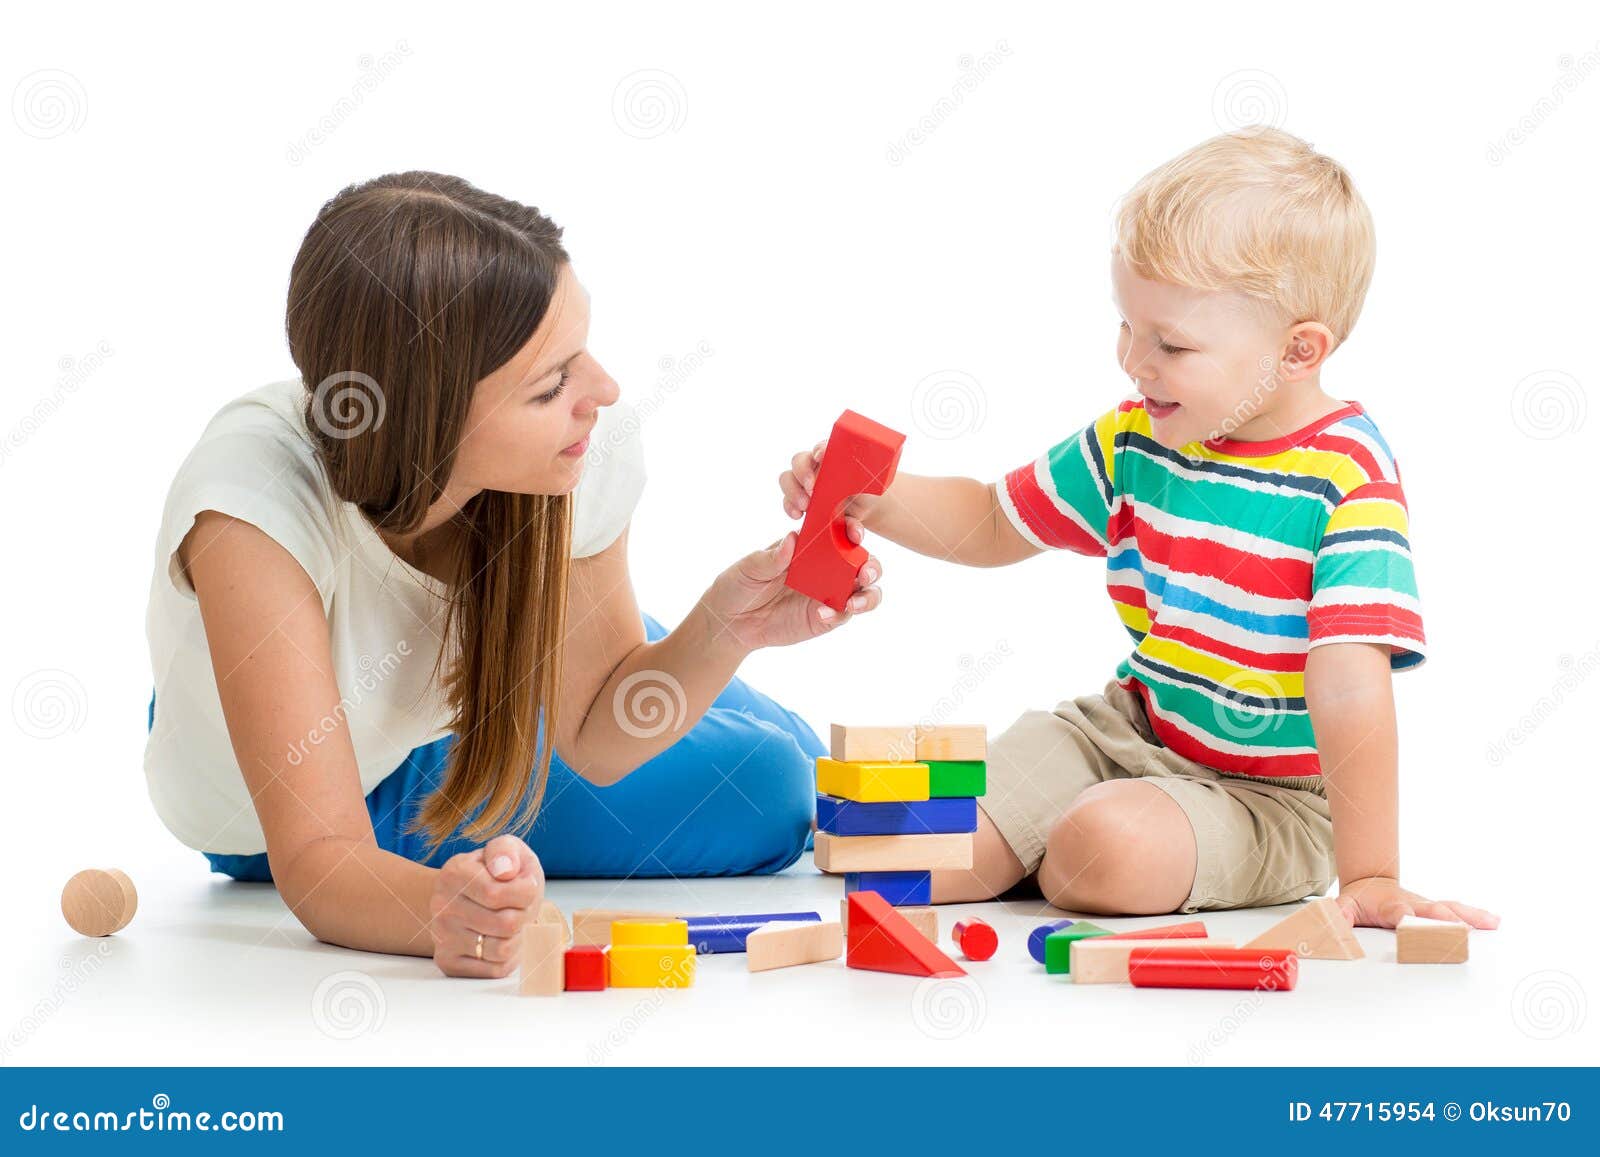 Дашь малыш игры. Мама дает ребенку игрушку. Игра мама и малыш. Мама играет с малышом. Мама и ребенок с игрушками.